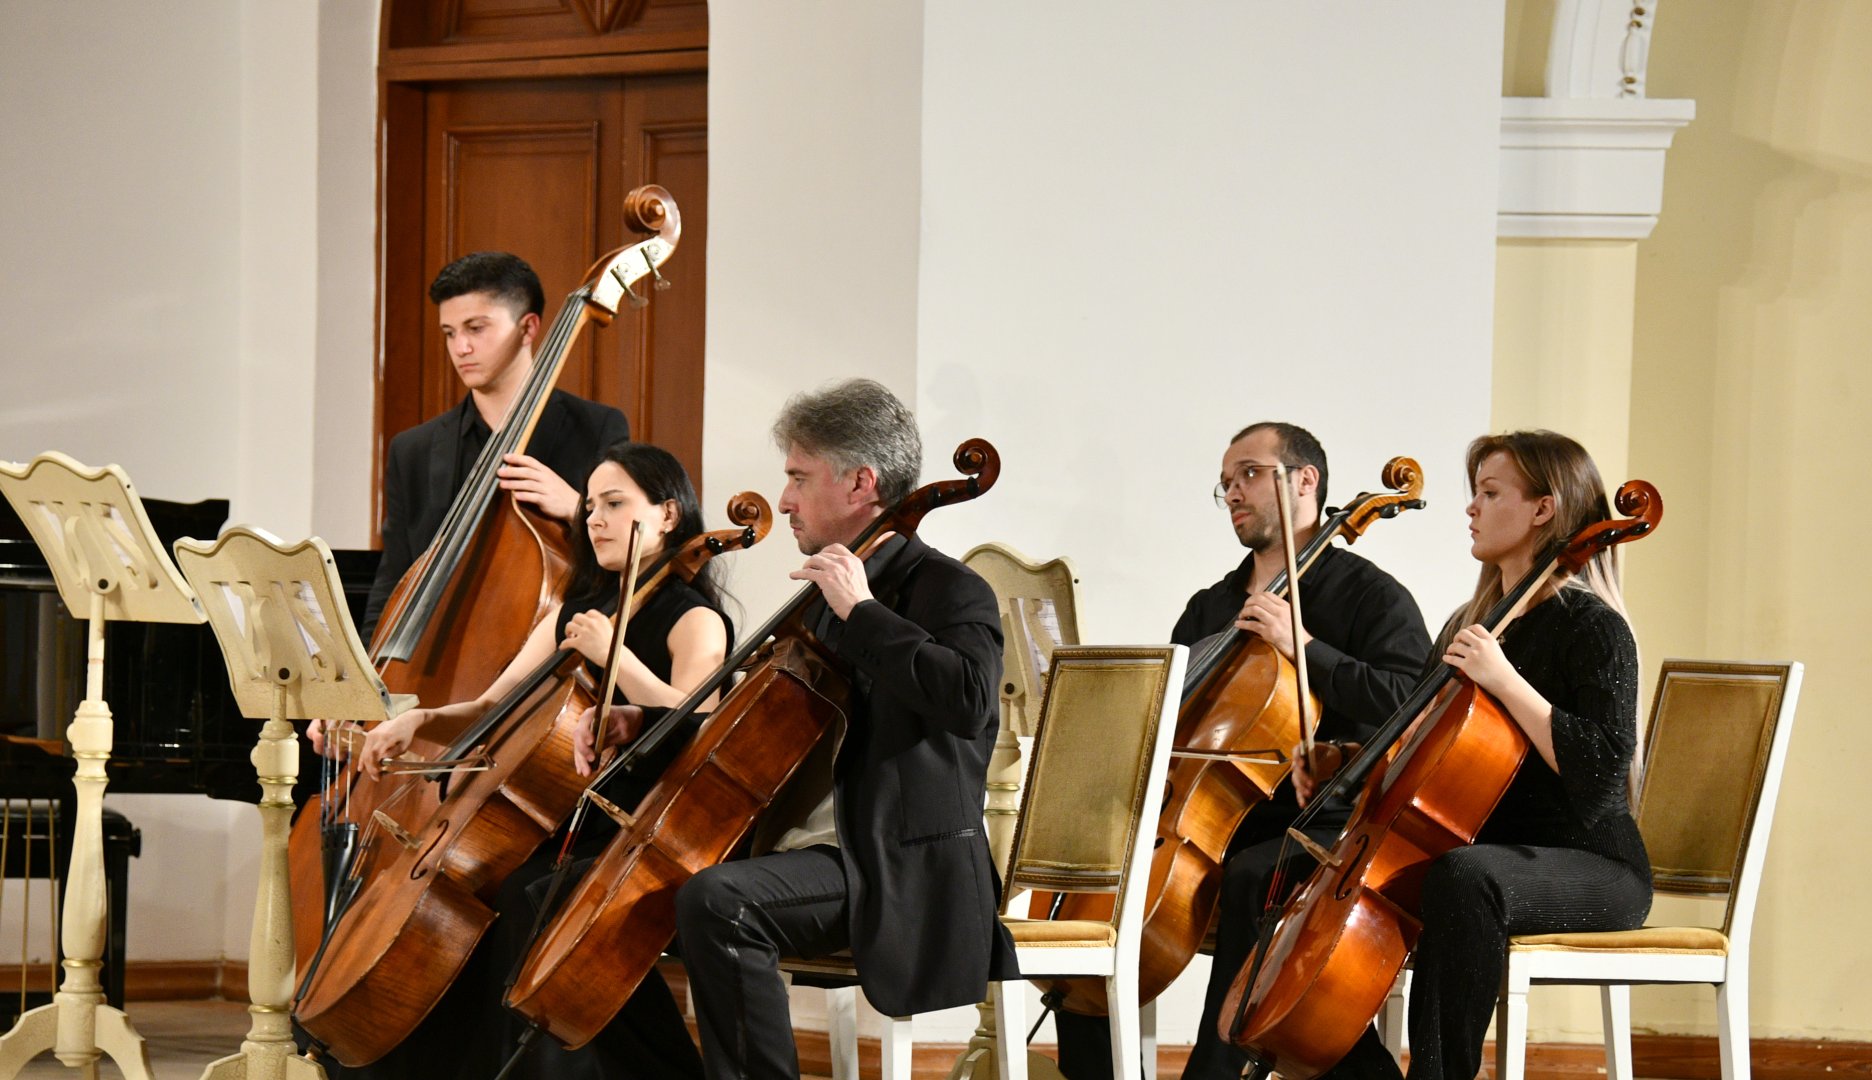 В Баку прошел вечер  музыки мировых классиков (ФОТО)